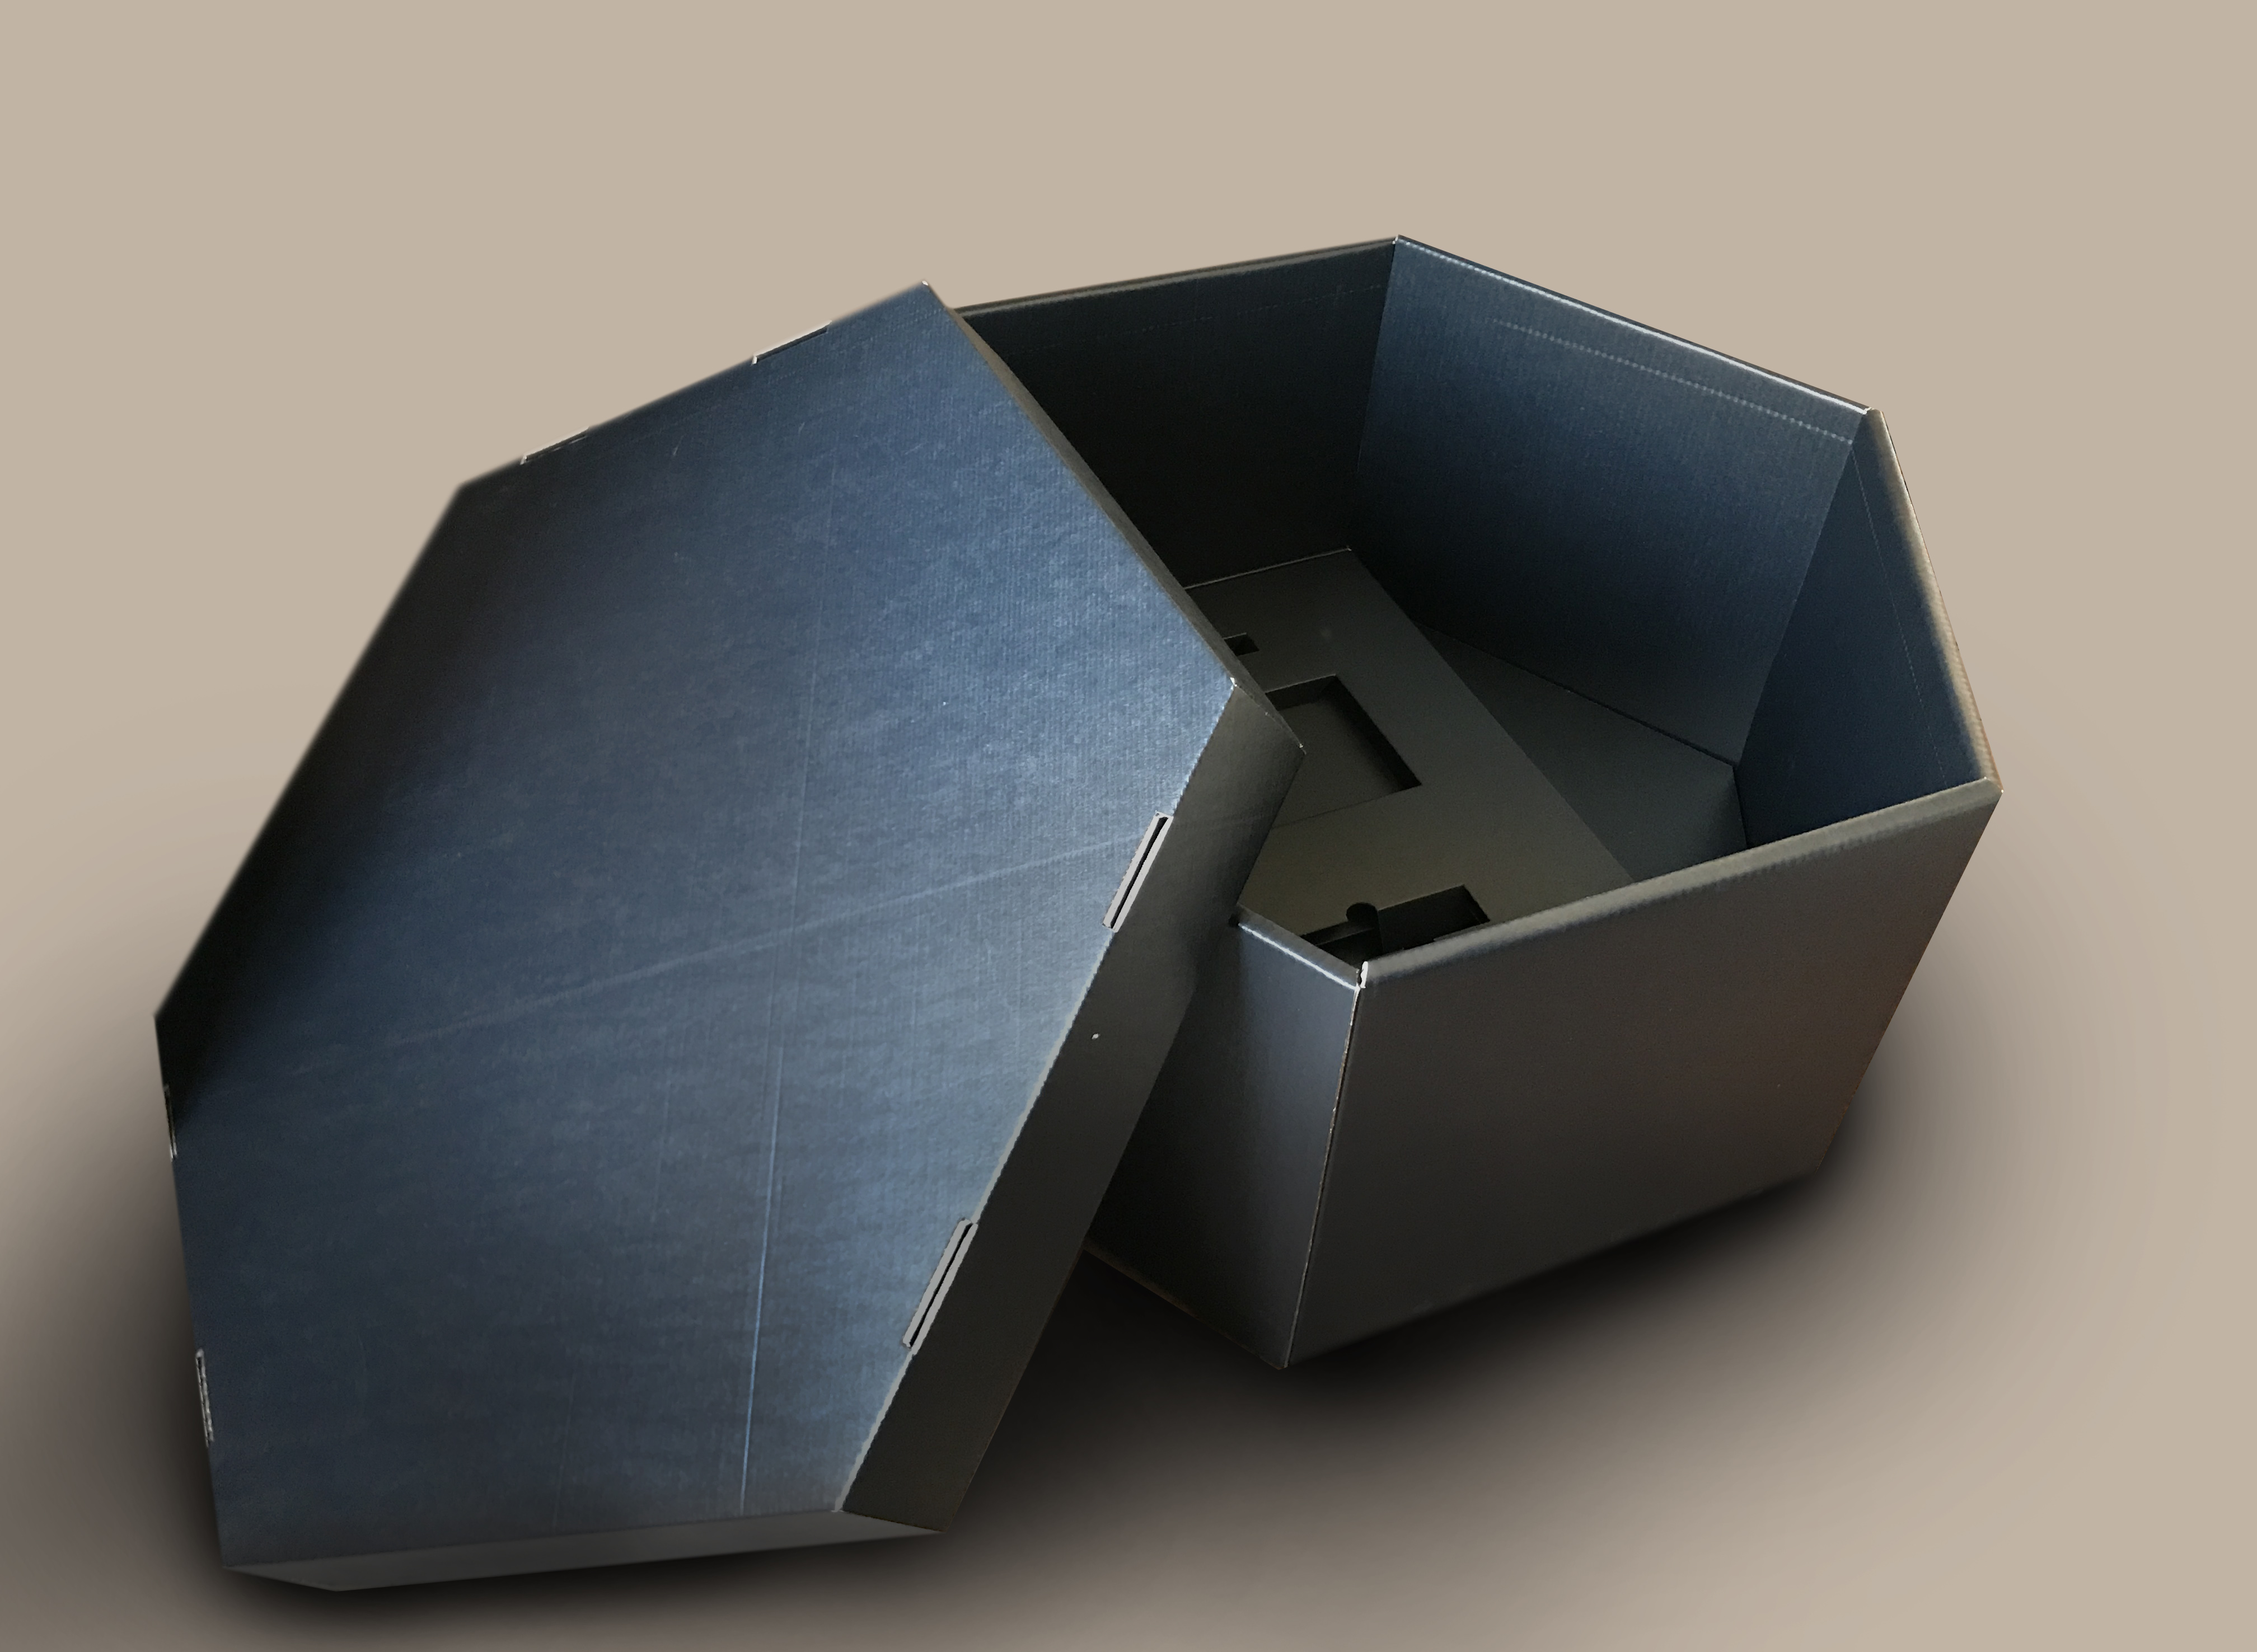 Prototipo di scatola fondo e coperchio esagonale, in cartone conduttivo